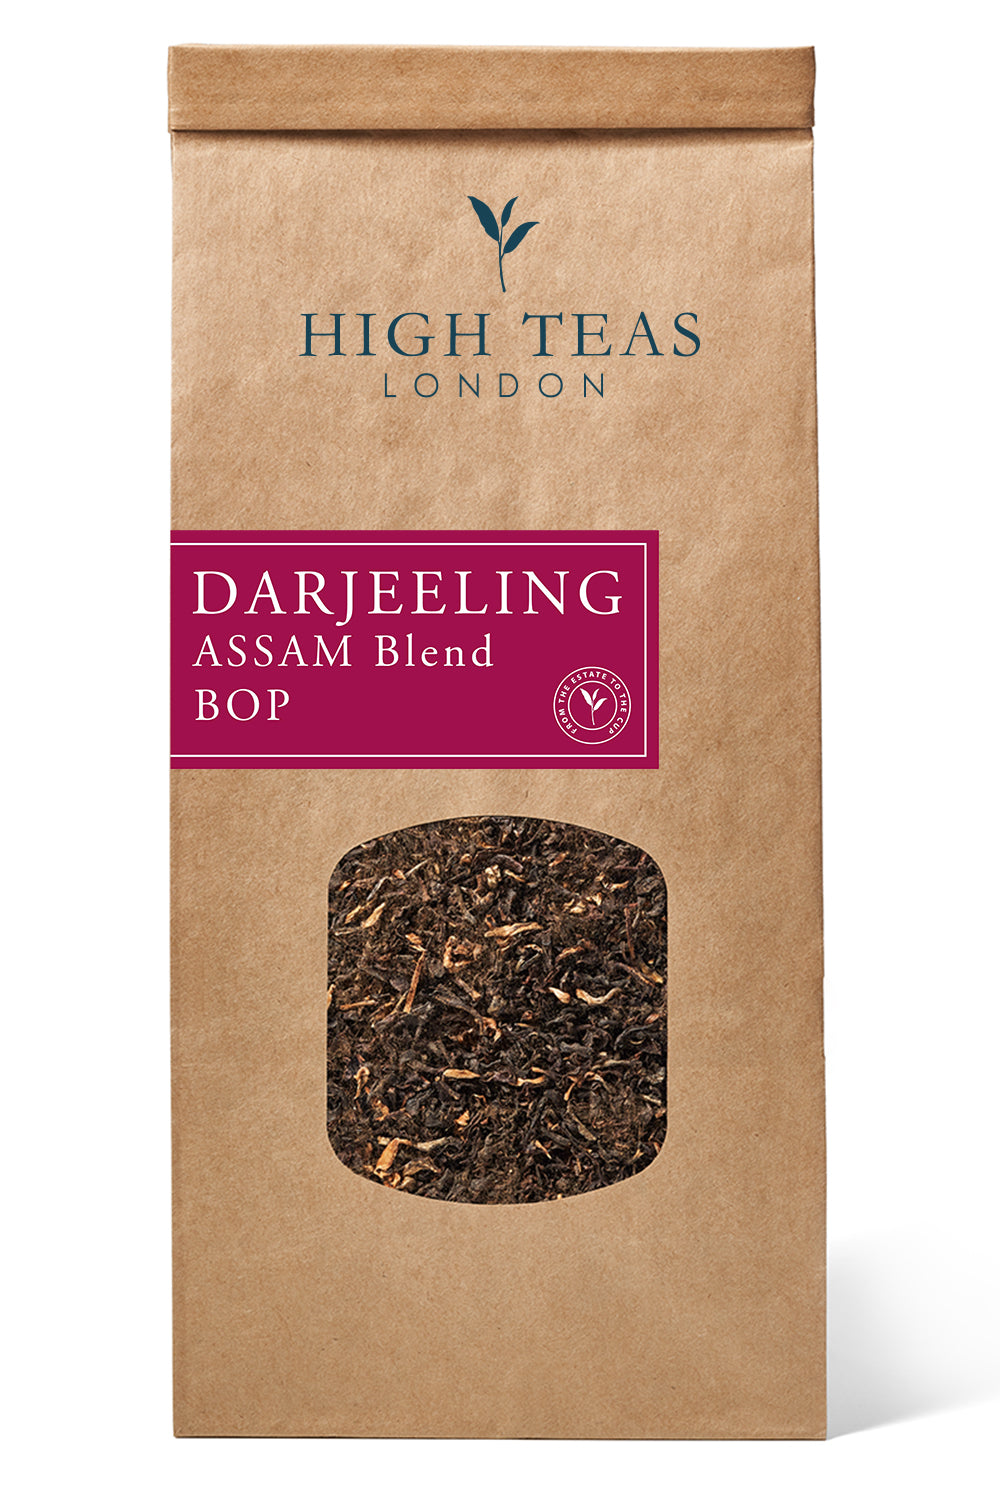 Darjeeling/Assam Blend BOP - Our Brunch Tea-250g-Loose Leaf Tea-High Teas